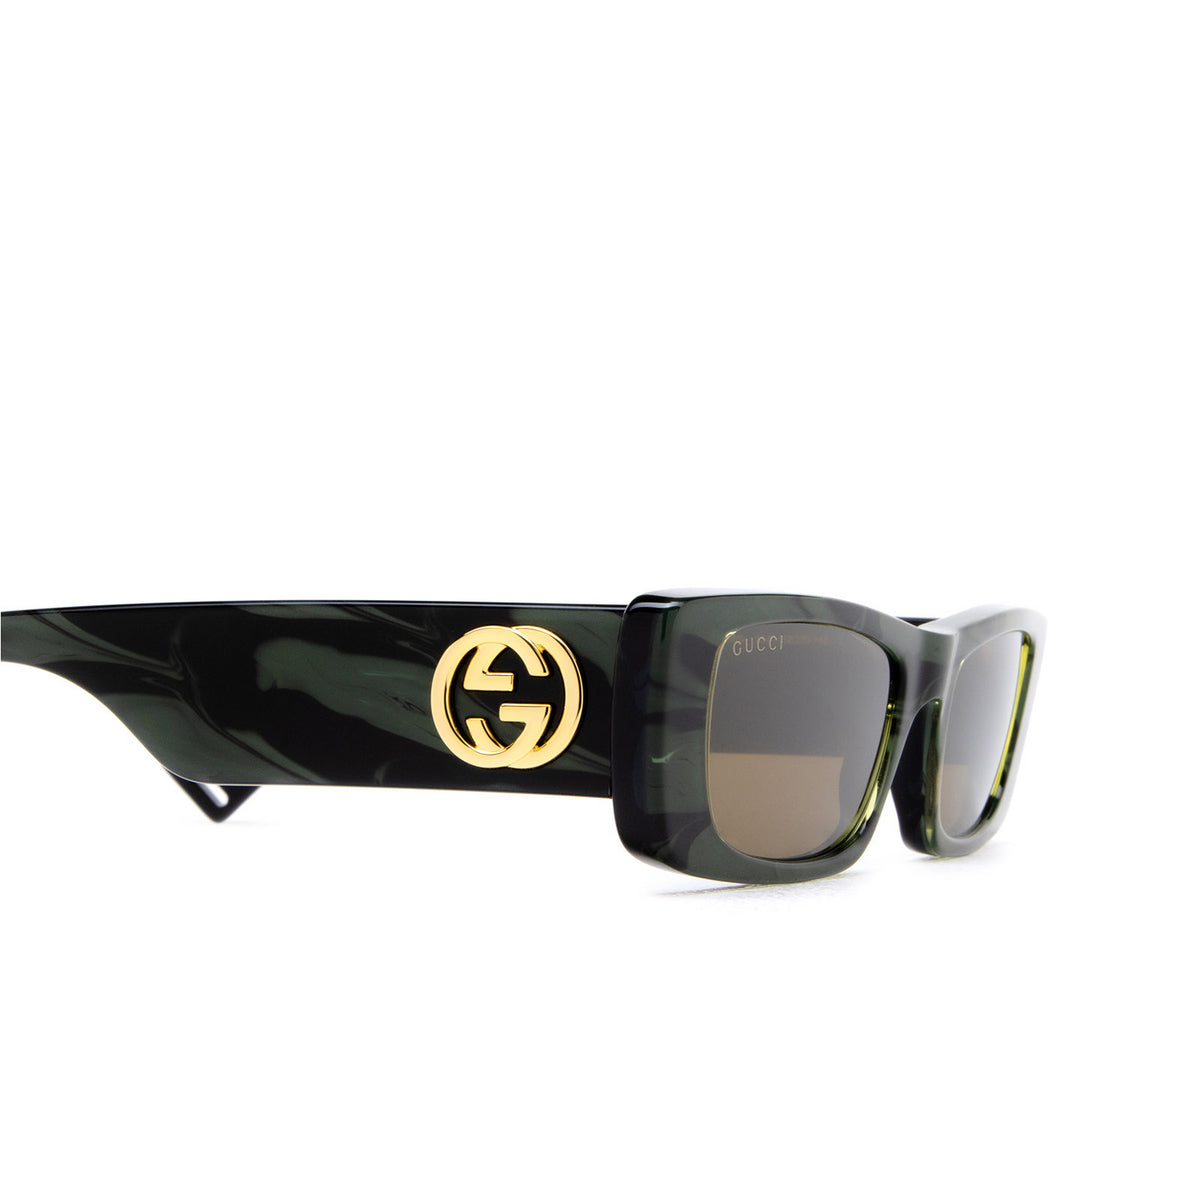 Gucci GG0516S-014 52mm New Sunglasses